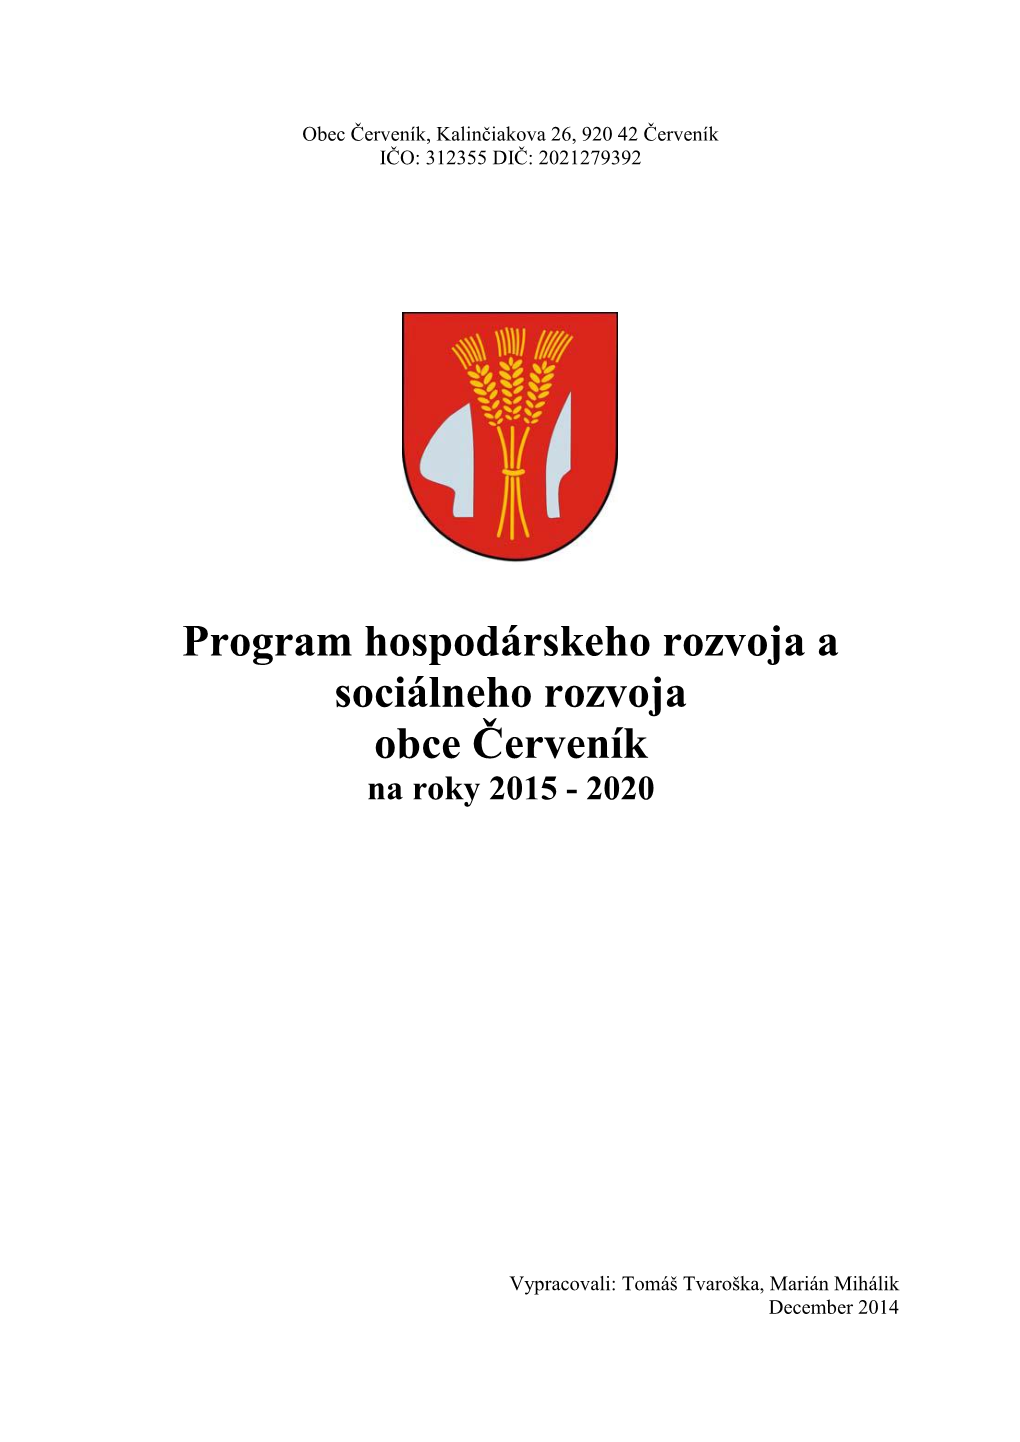 Program Hospodárskeho Rozvoja a Sociálneho Rozvoja Obce Červeník Na Roky 2015 - 2020